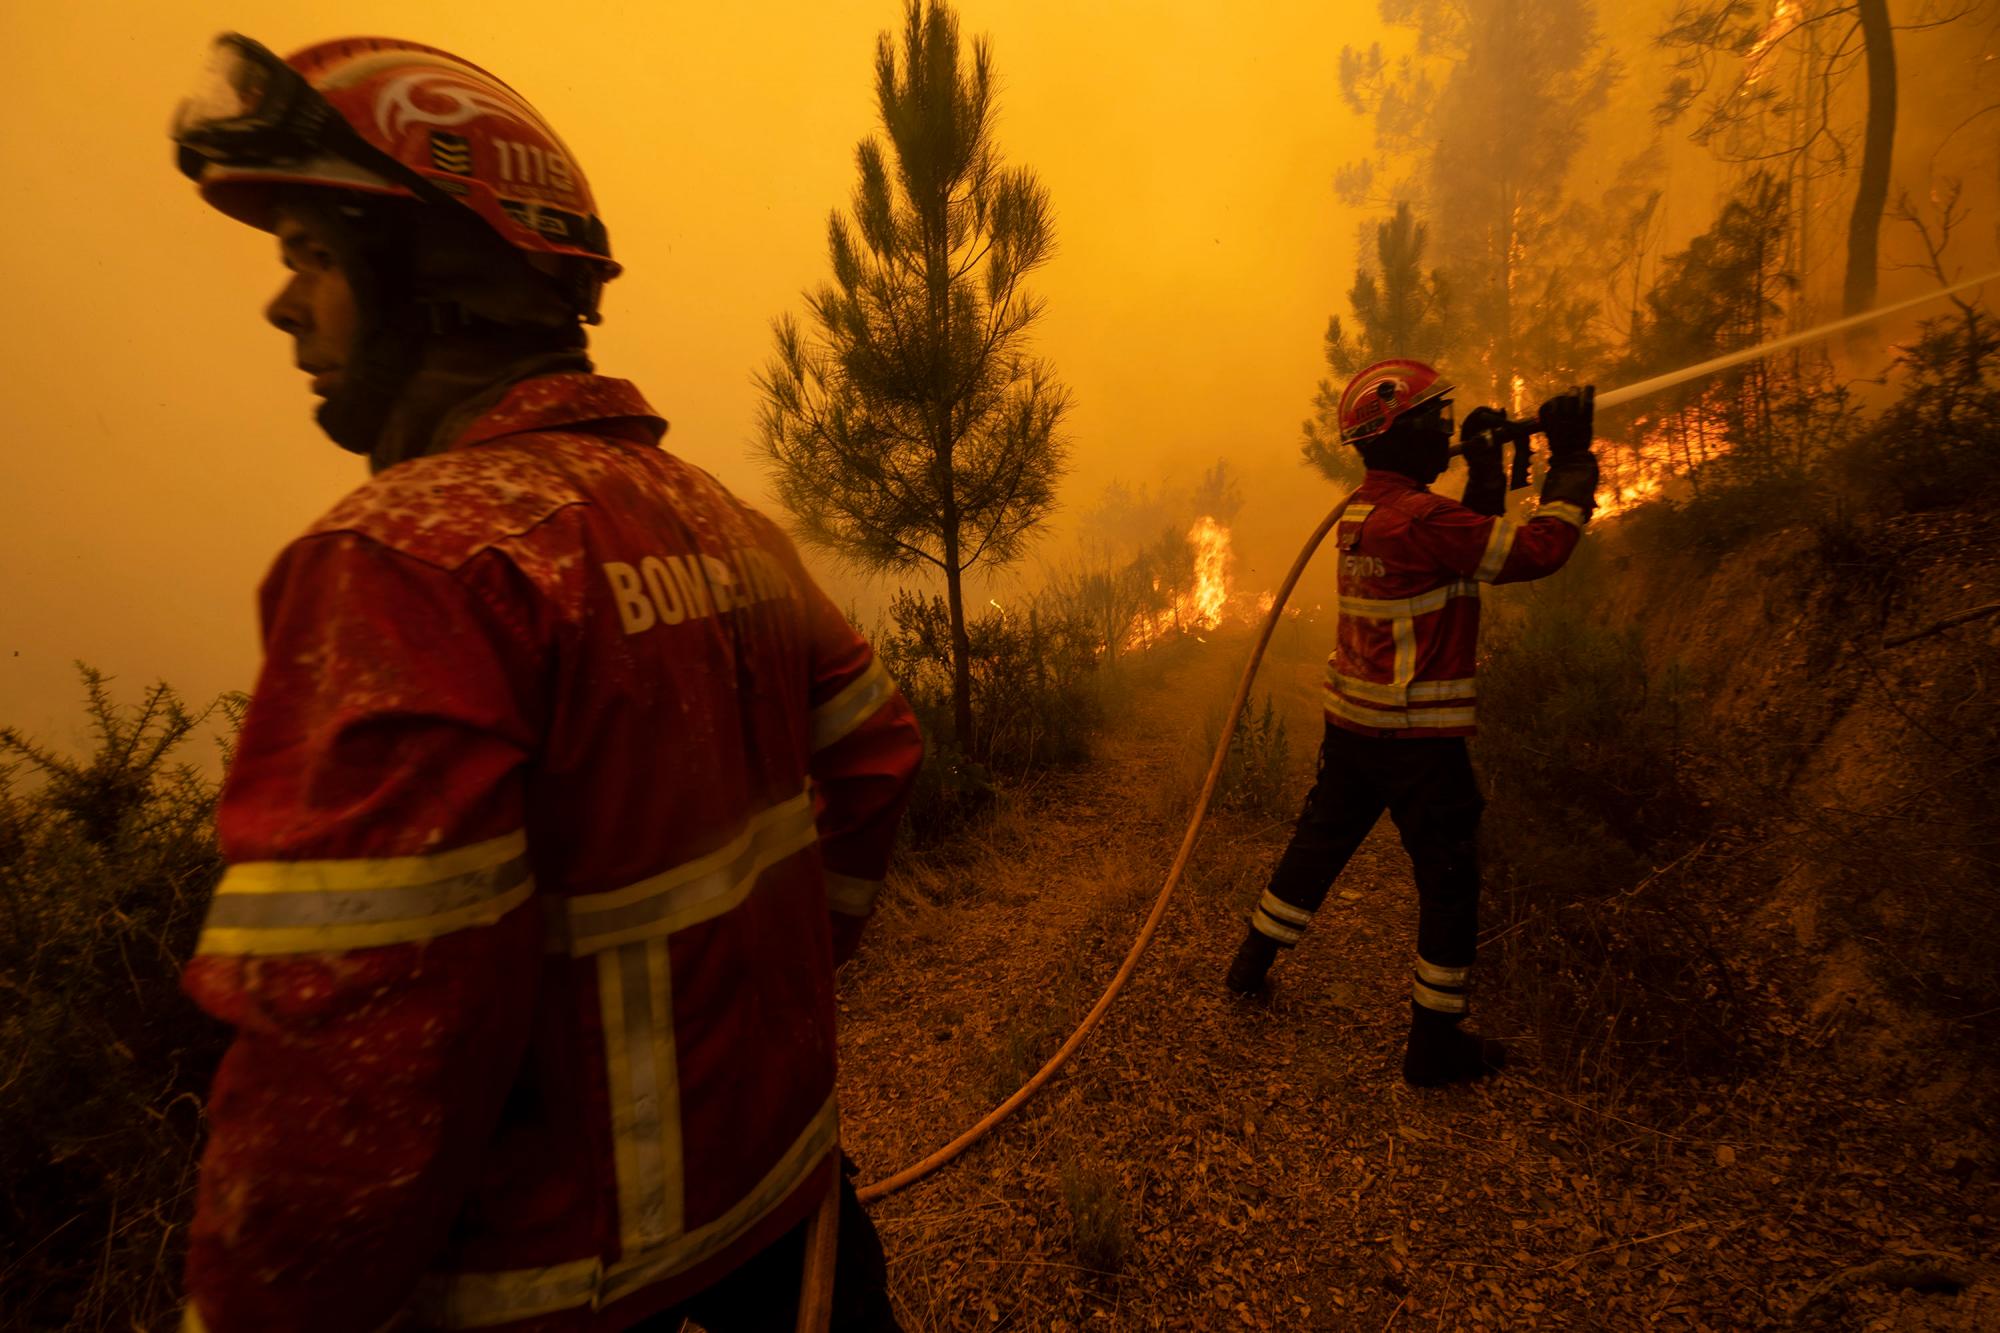 Los bomberos intentan apagar un incendio forestal en la aldea de Chaveira, cerca de Macao, en el centro de Portugal el lunes 22 de julio de 2019. Más de 1,000 bomberos están luchando contra un gran incendio en medio de altas temperaturas en Portugal, donde los incendios forestales destruyen cada verano. Según el comandante de la Agencia de Protección Civil local, alrededor del 90% del área de incendios en el distrito de Castelo Branco, a 200 kilómetros (125 millas) al noreste de la capital, Lisboa, se ha puesto bajo control durante temperaturas más frías durante la noche.